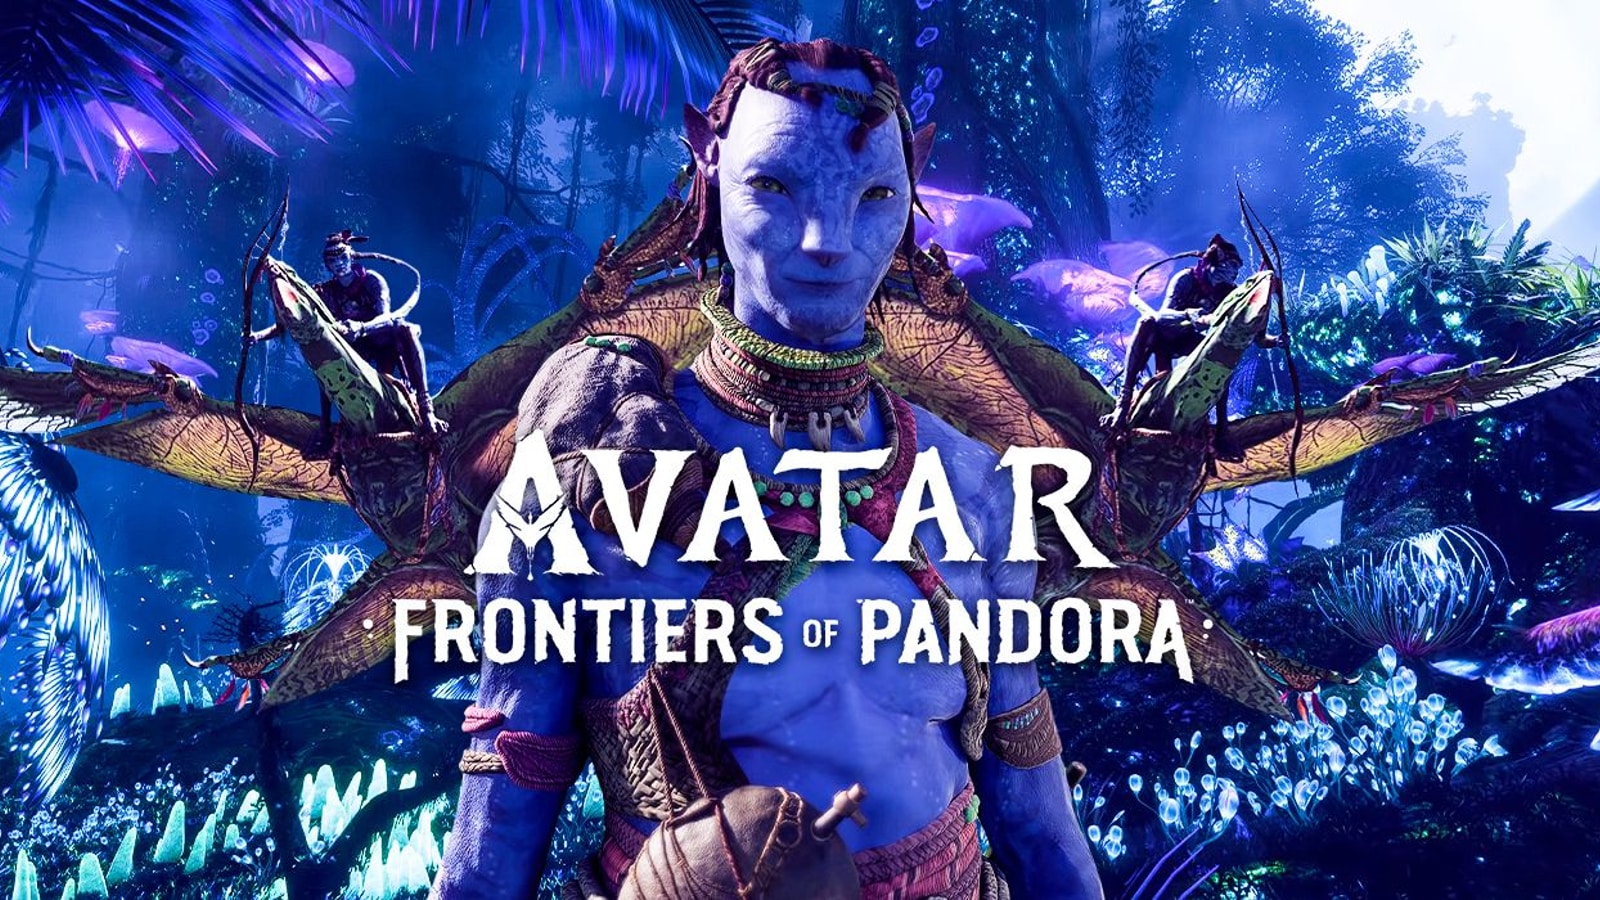 Với những hình ảnh Sneak Peek mới nhất vào năm 2024, người chơi sẽ được thưởng thức trước những tính năng mới nhất của Avatar Frontiers of Pandora. Nếu bạn là một fan của trò chơi, hình ảnh này chắc chắn sẽ khiến bạn háo hức chờ đợi.